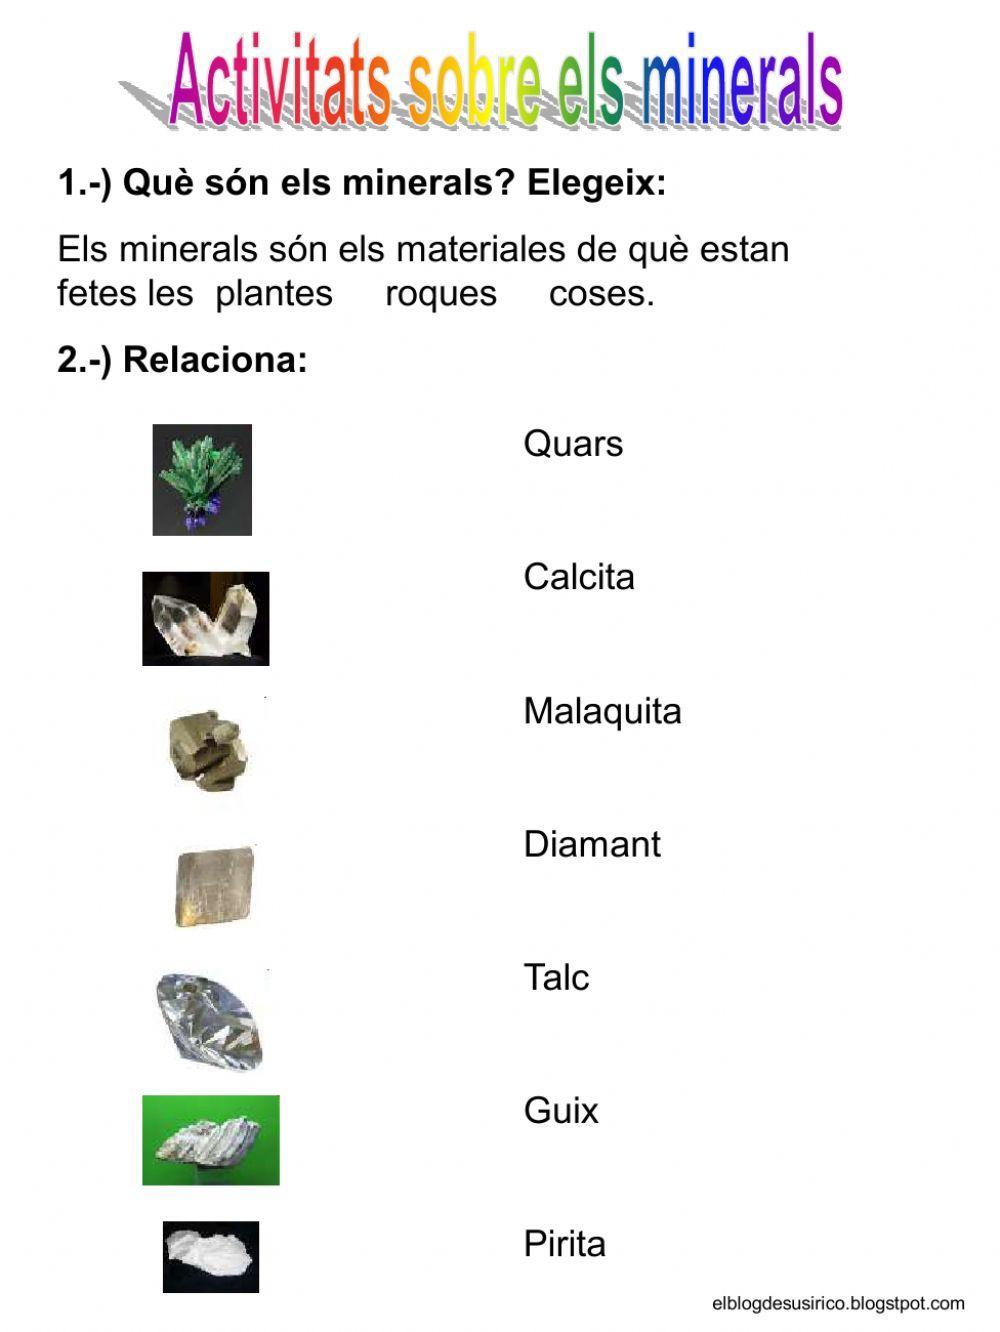 Els minerals